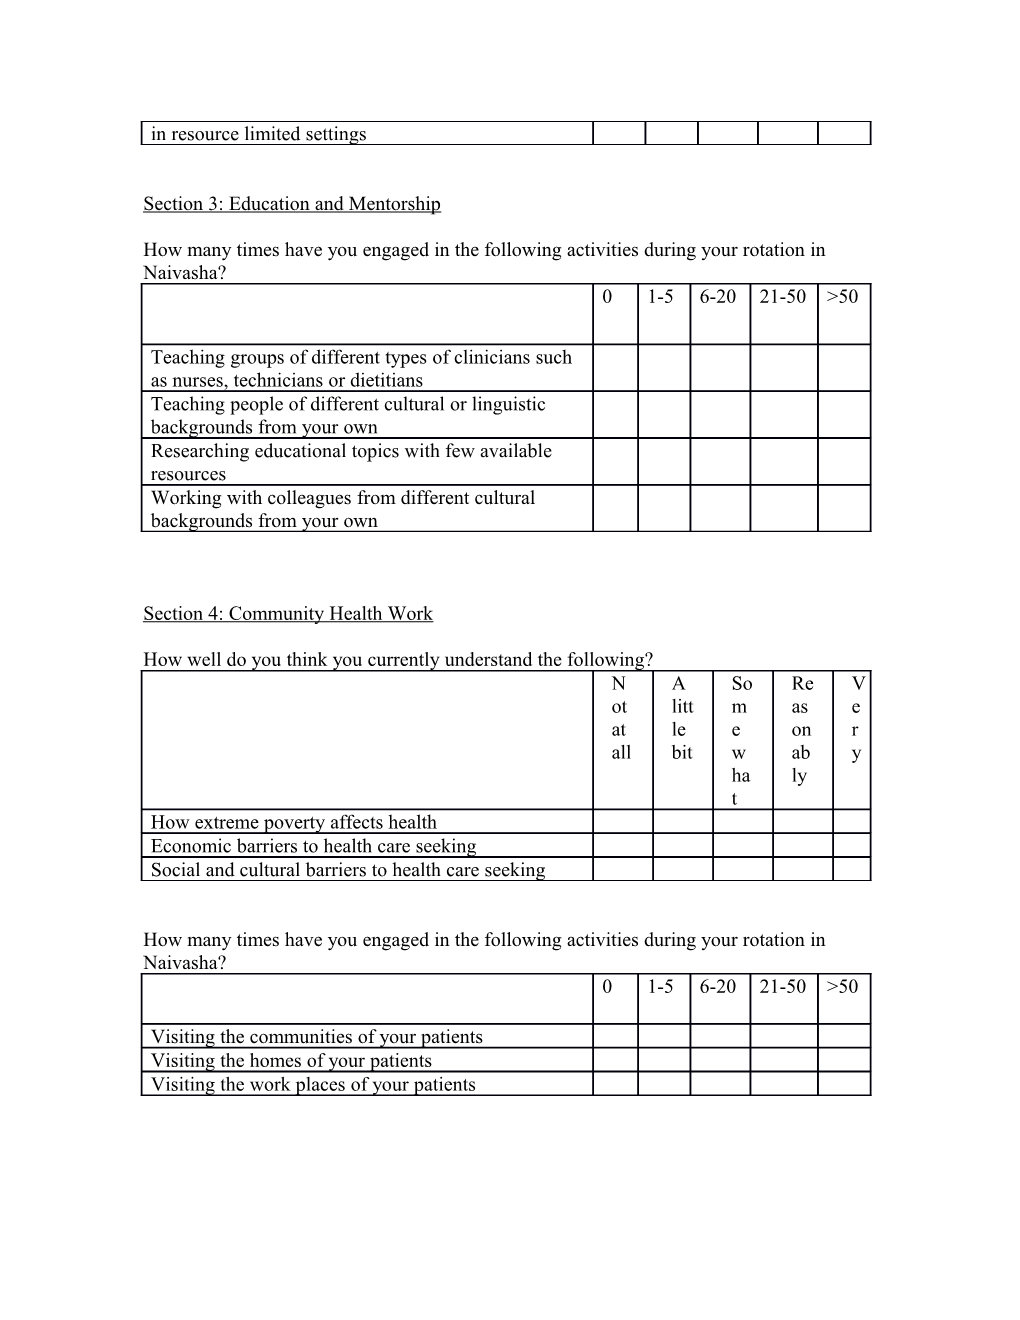 Post-Naivasha Rotation Questionnaire